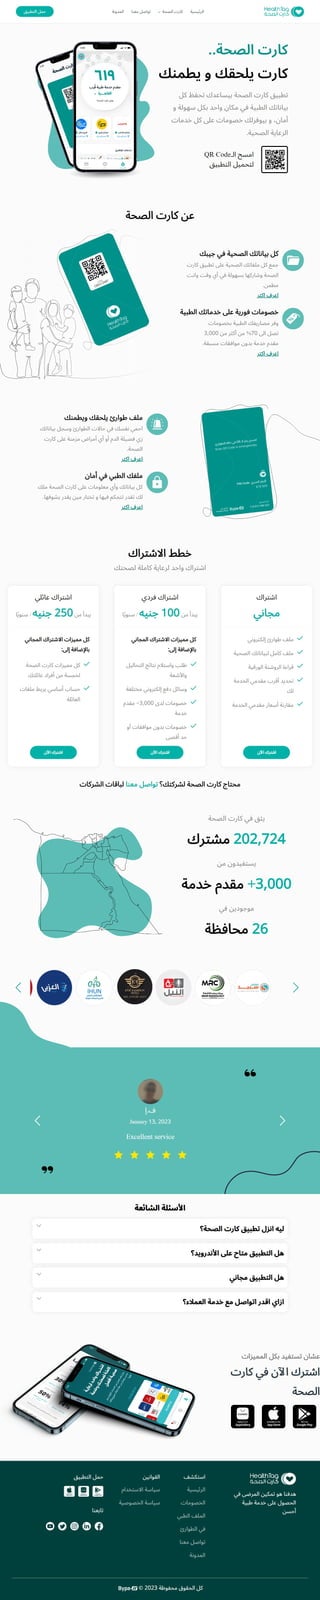 منظومة تبادل البيانات الطبية الاولى في مصر - كارت الصحة - healthtag.me.pdf